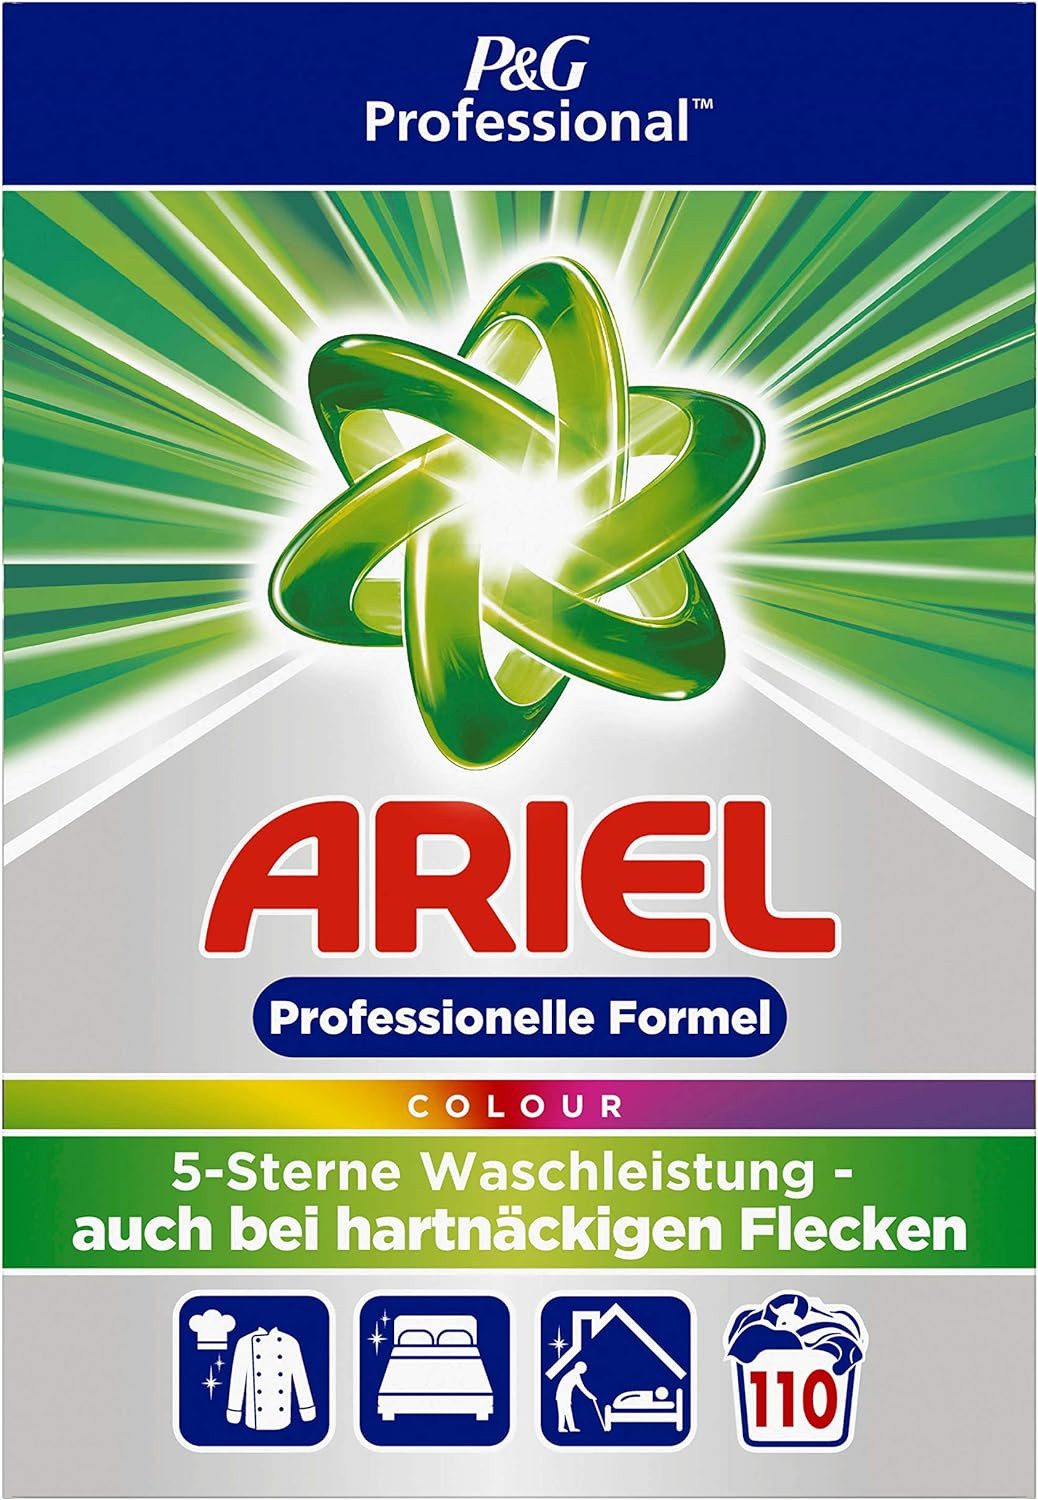 ARIEL Professional Vollwaschmittel Pulver Color - 6,60 kg – 110 Waschladunge Vollwaschmittel (ultra-konzentrierte Formel, hervorragende Fleckenentfernung)